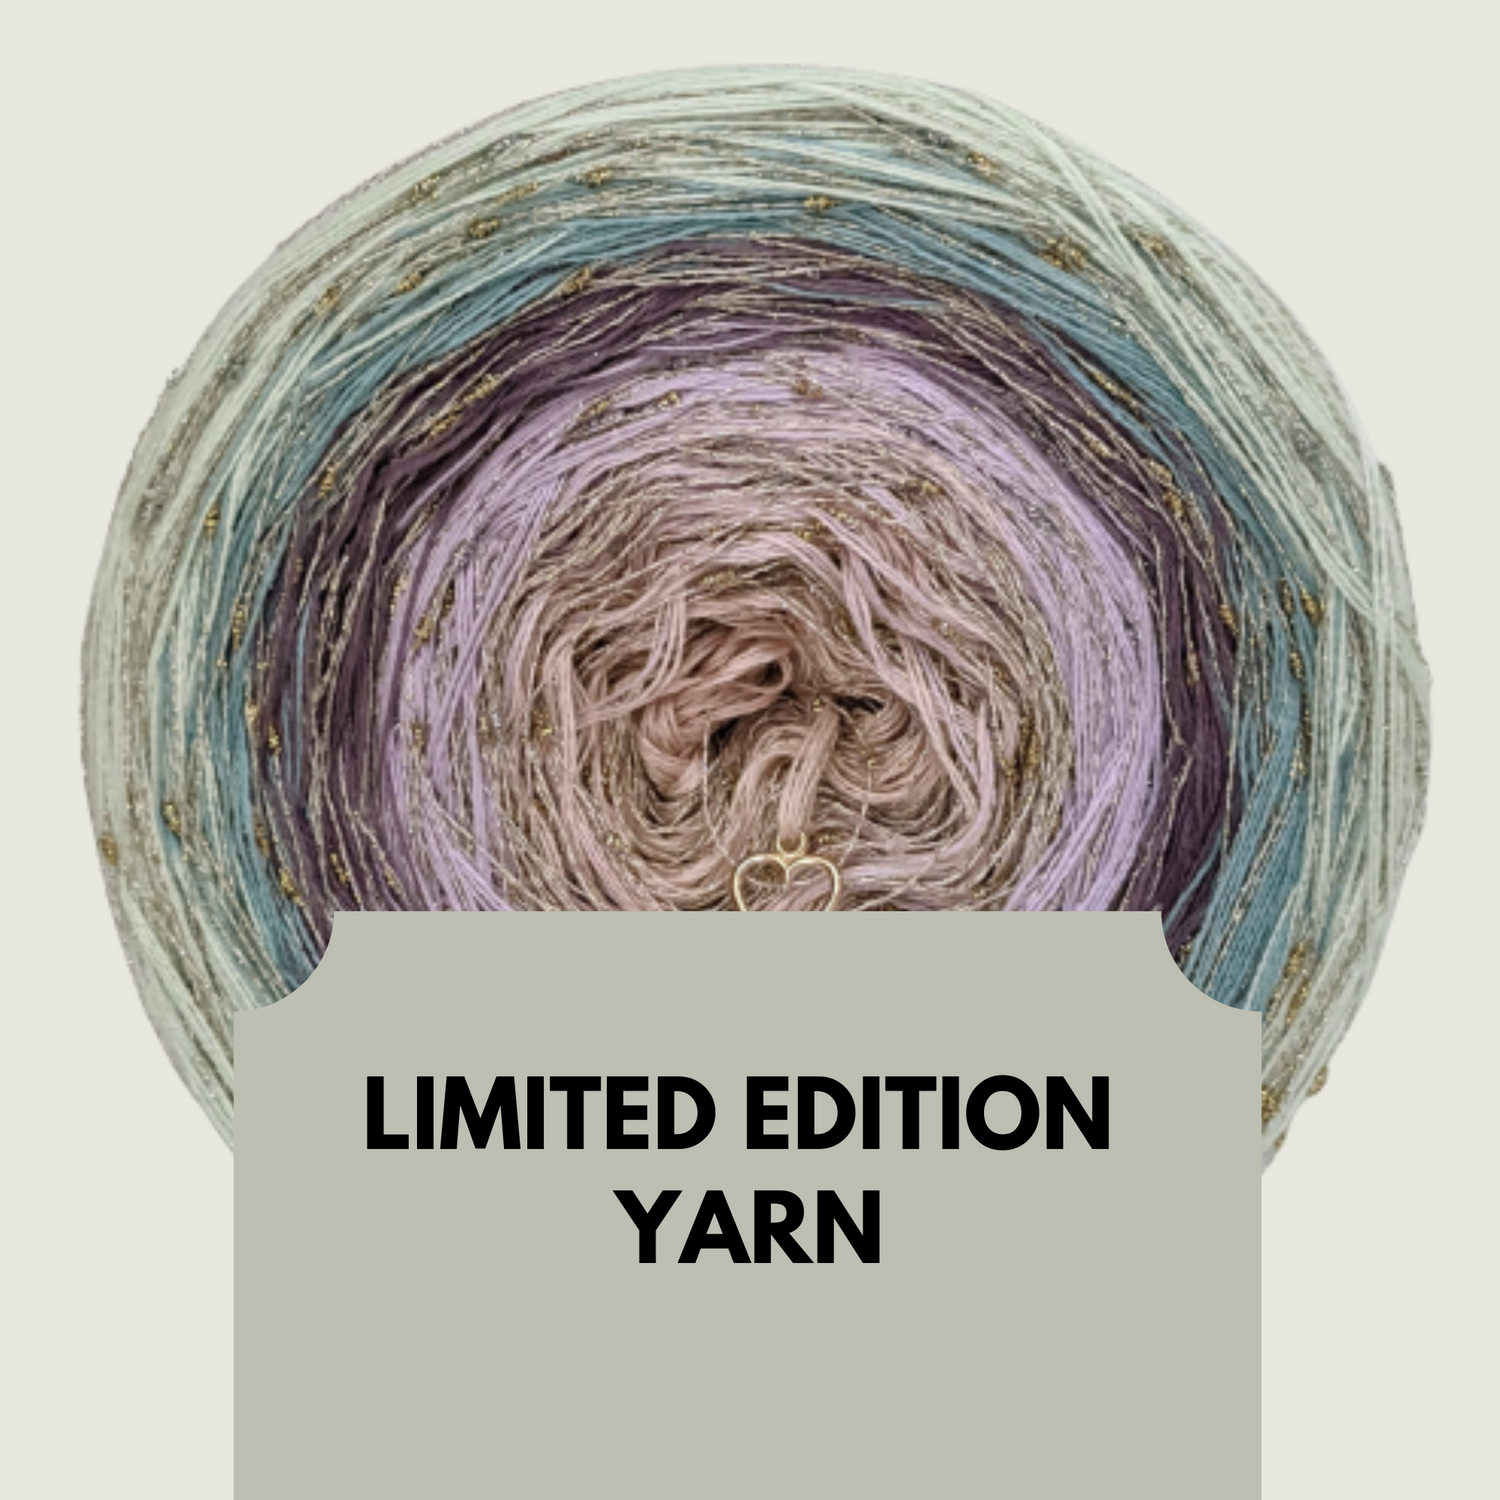 Limited Edition Yarn